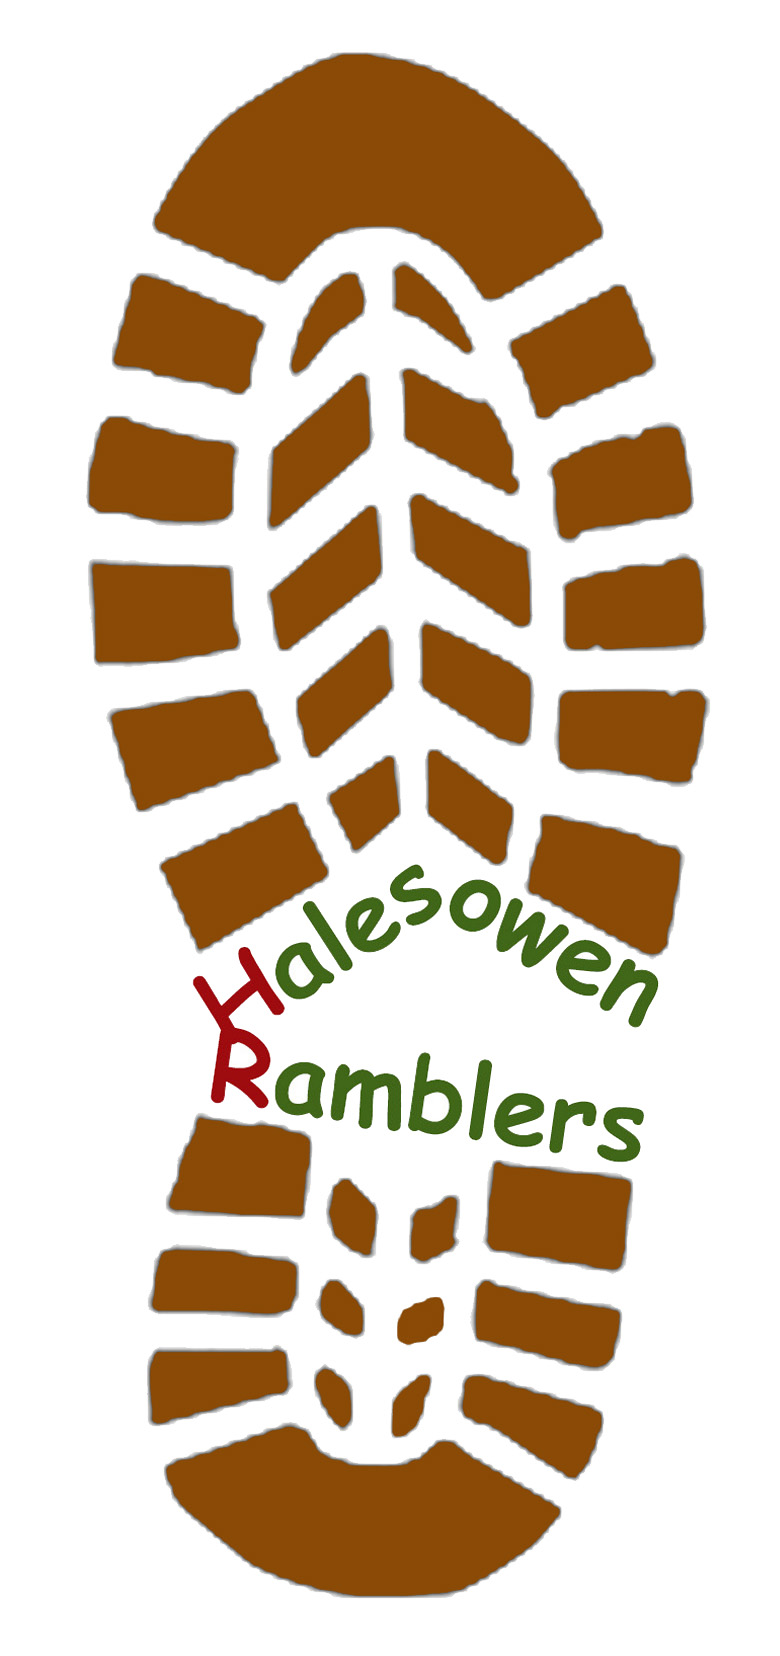 Halesowen Ramblers